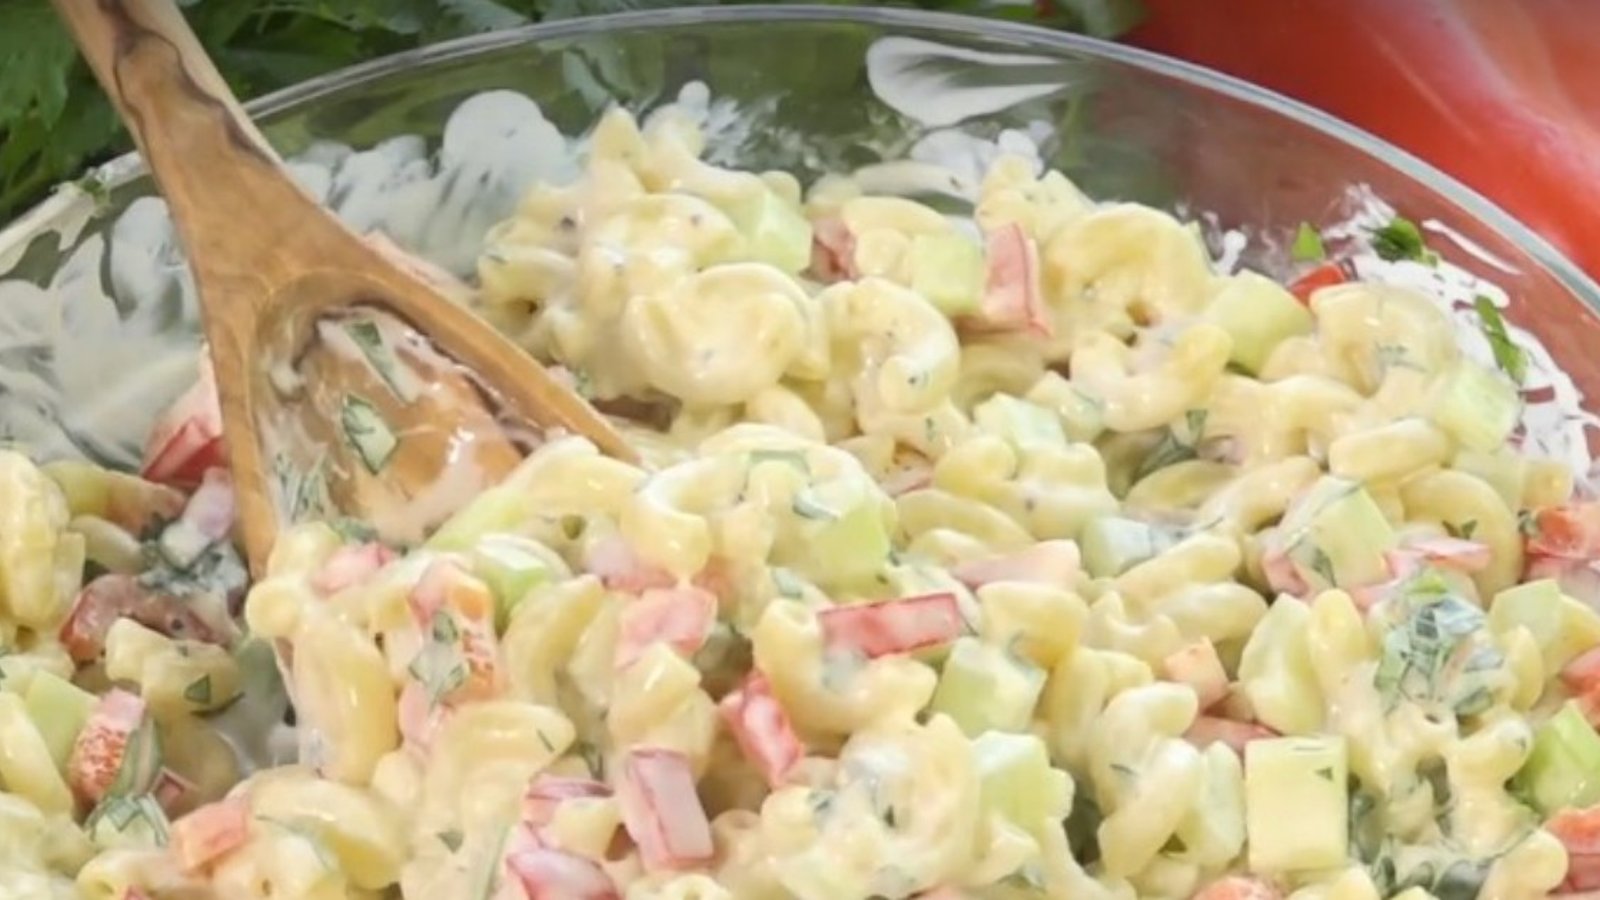 La meilleure salade de macaronis pour accompagner vos grillades sur le BBQ